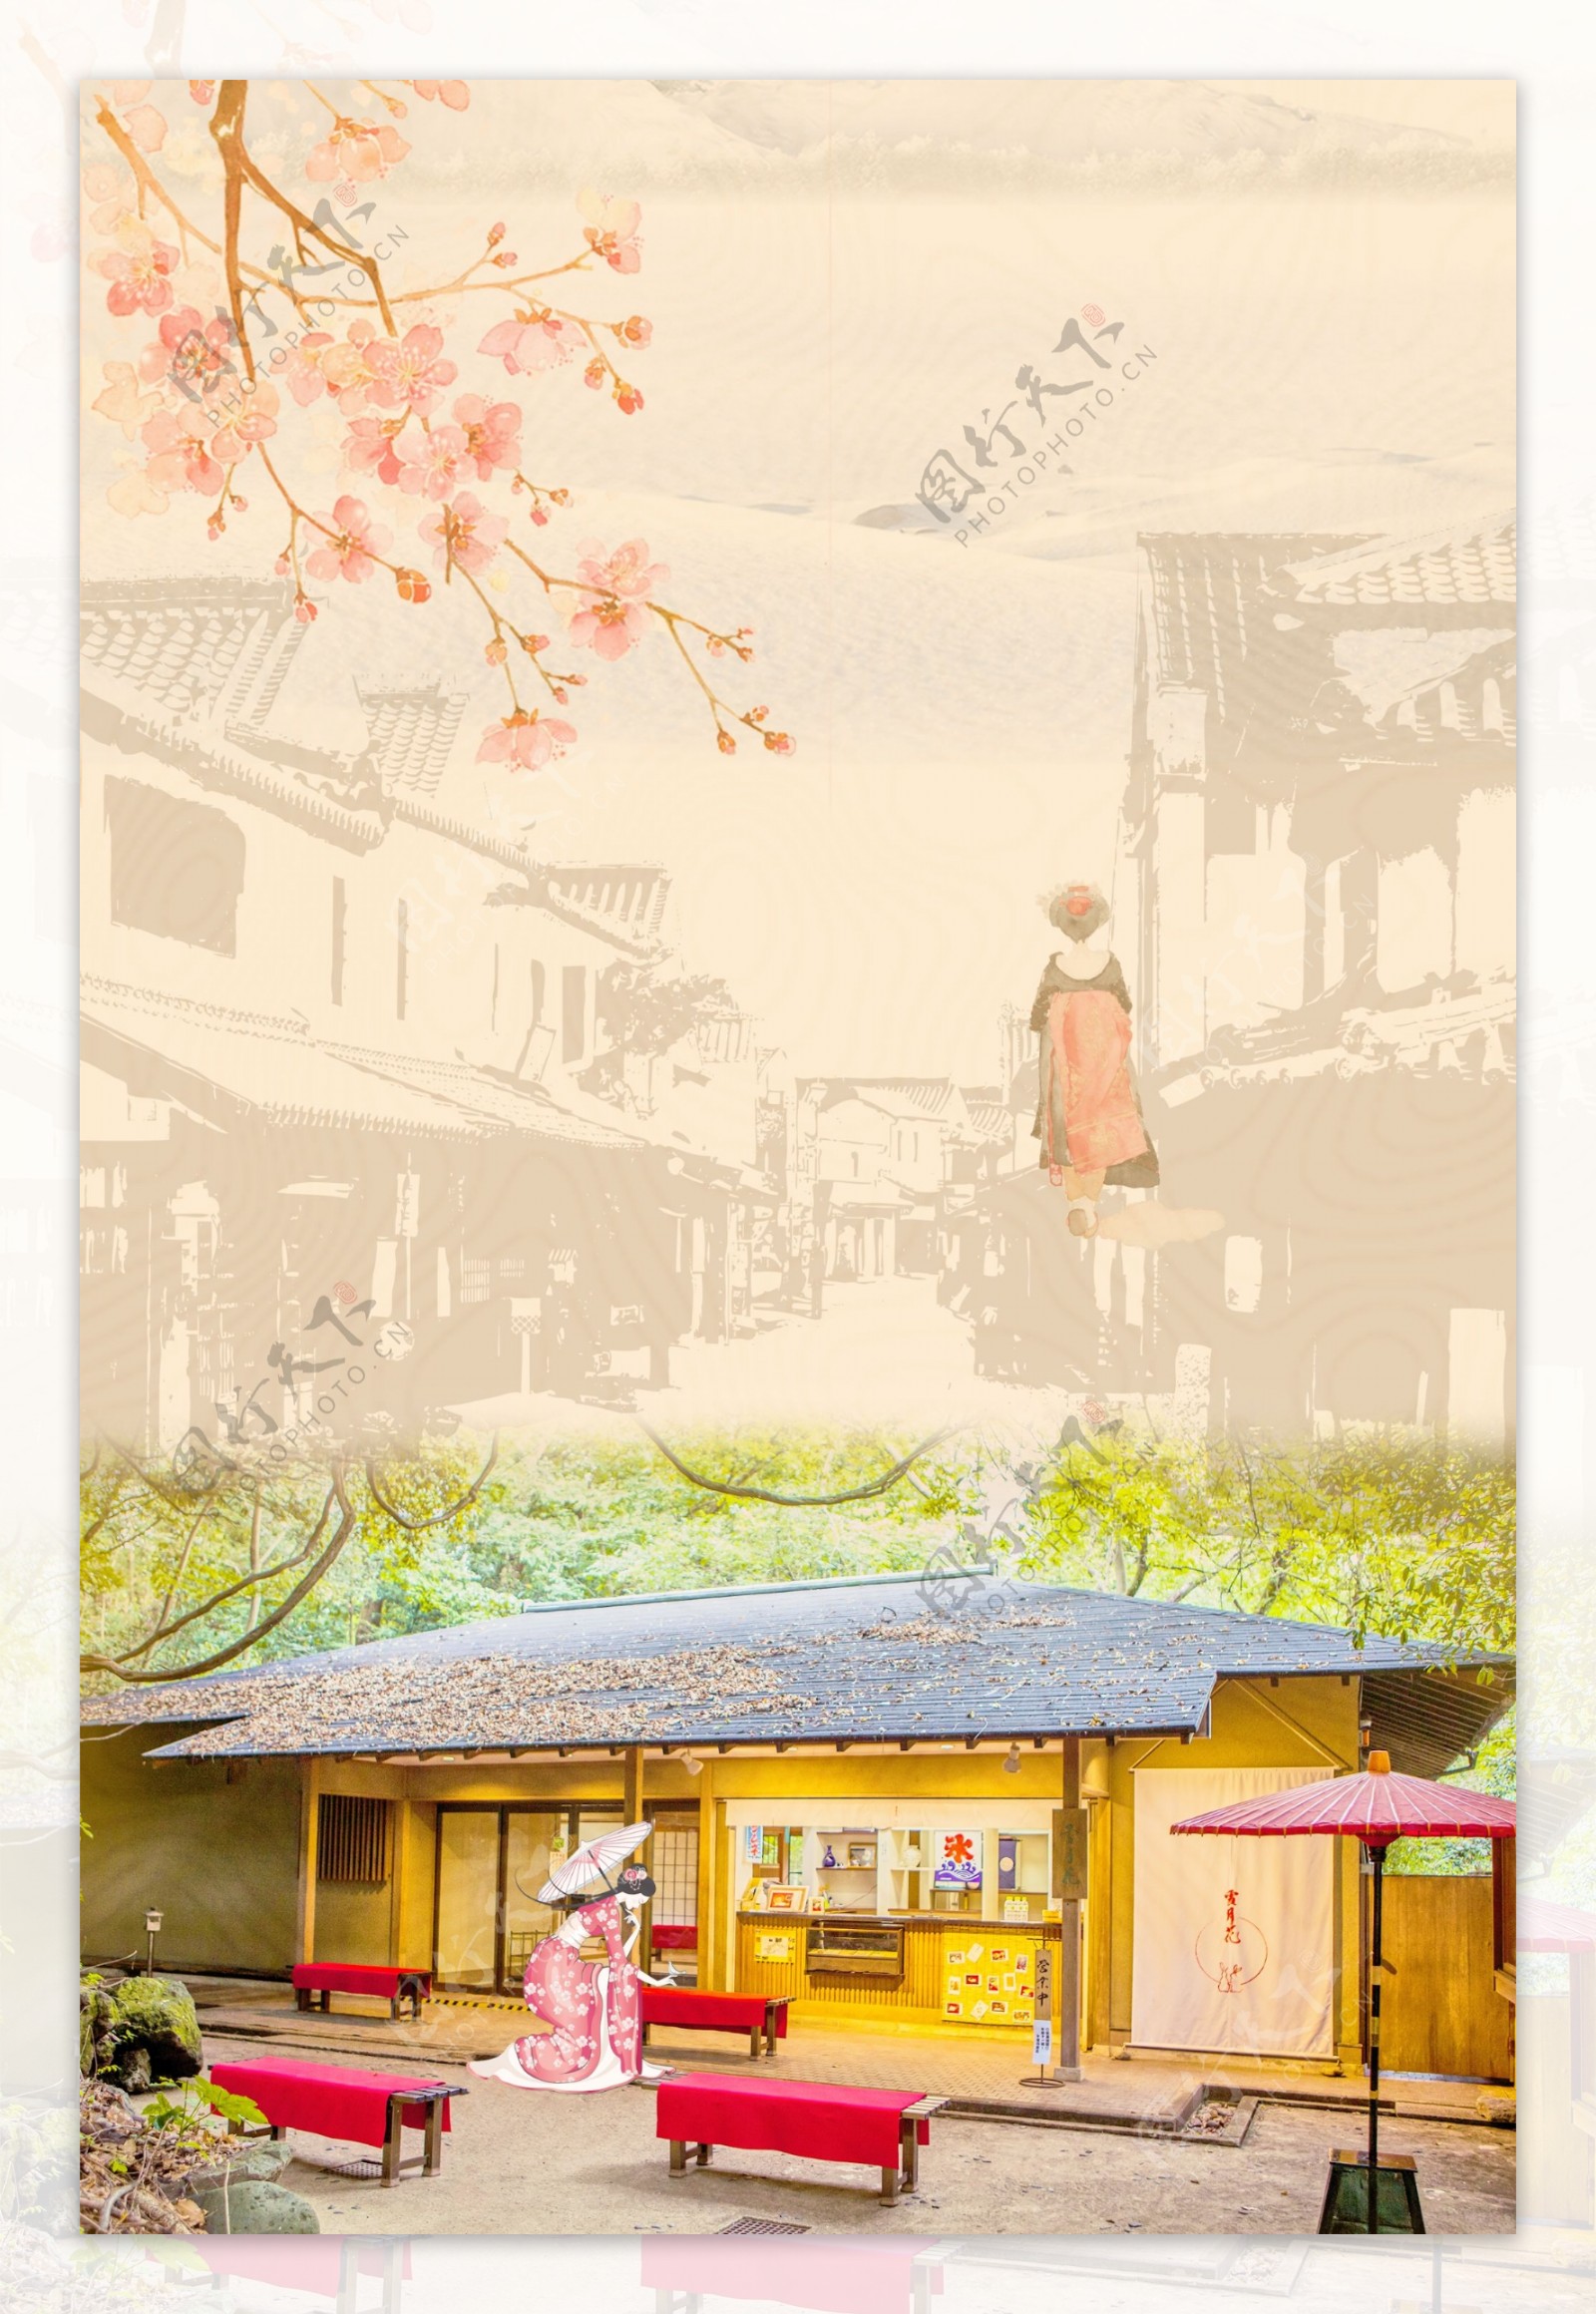 创意日本旅游海报背景设计